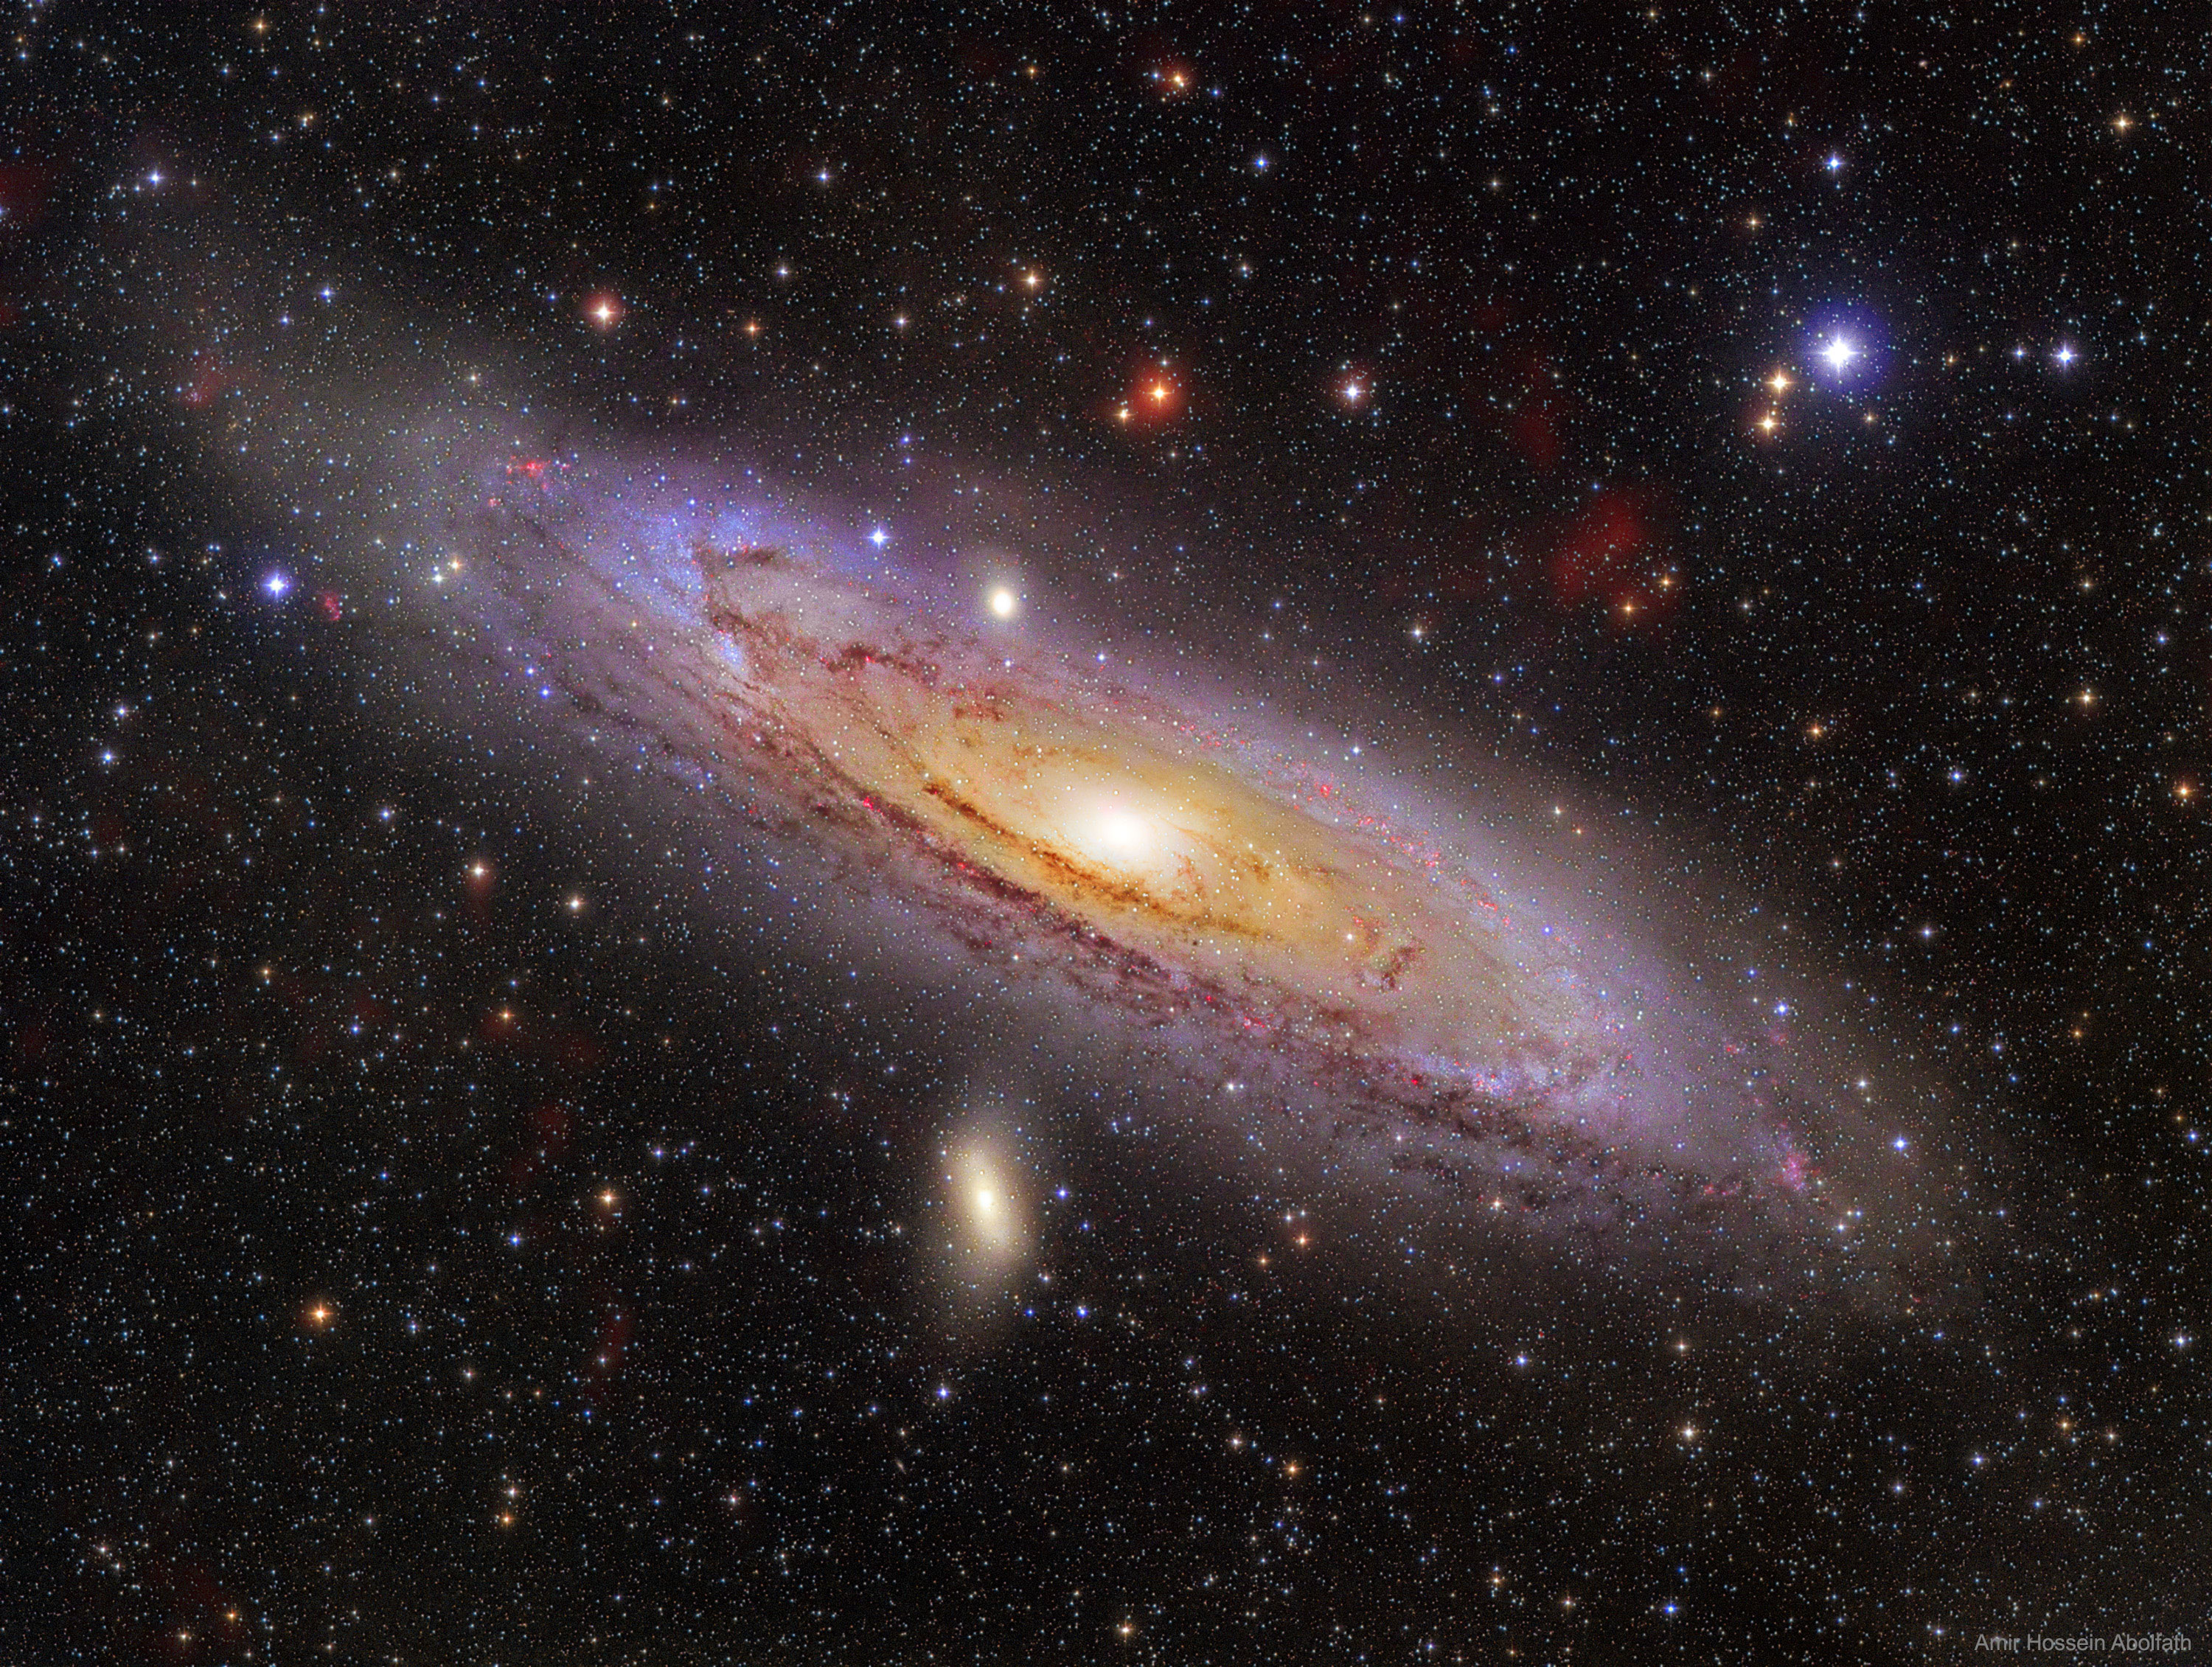 M31: The Andromeda Galaxy